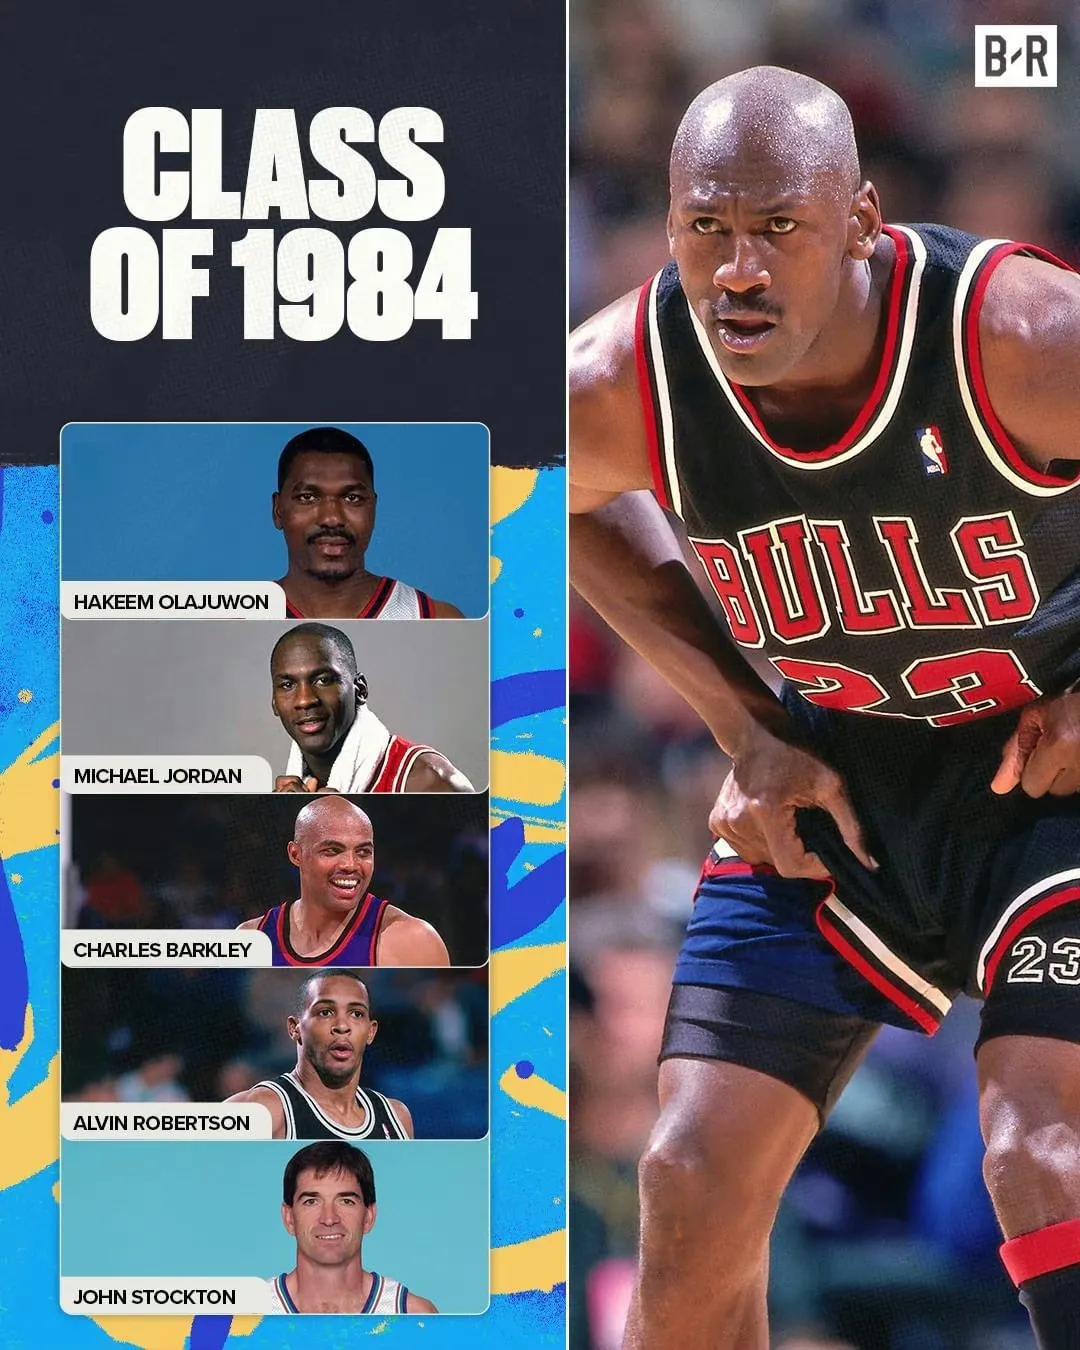 美媒发问：哪一届是最好的选秀年？

1984年选秀：
乔丹：6冠、5MVP、6F